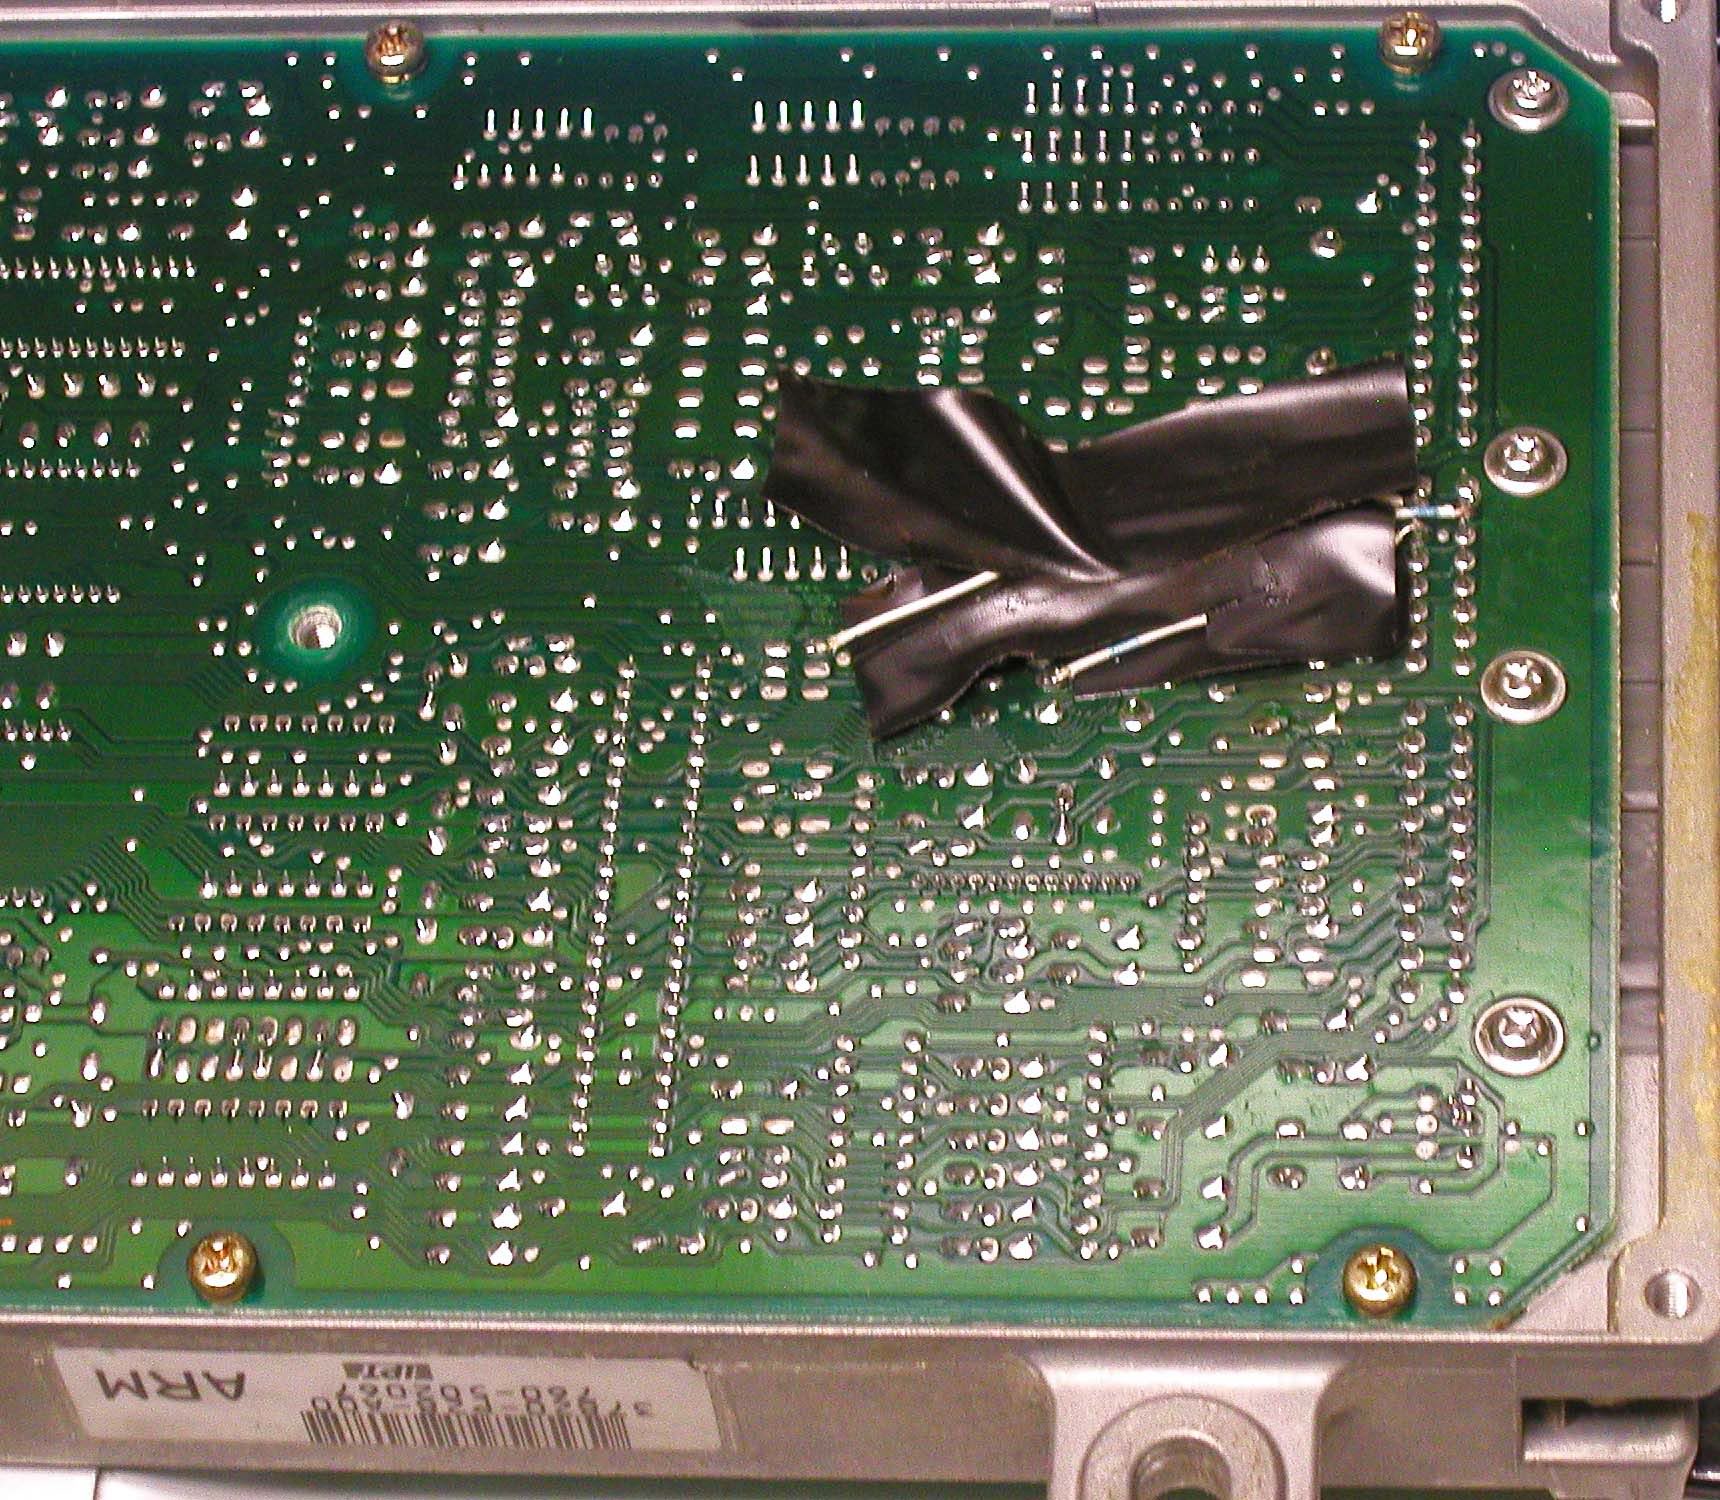 Honda OBD1 ECU Transistor Fix spots labeled Q31 OR Q28 FOR P13 ECU